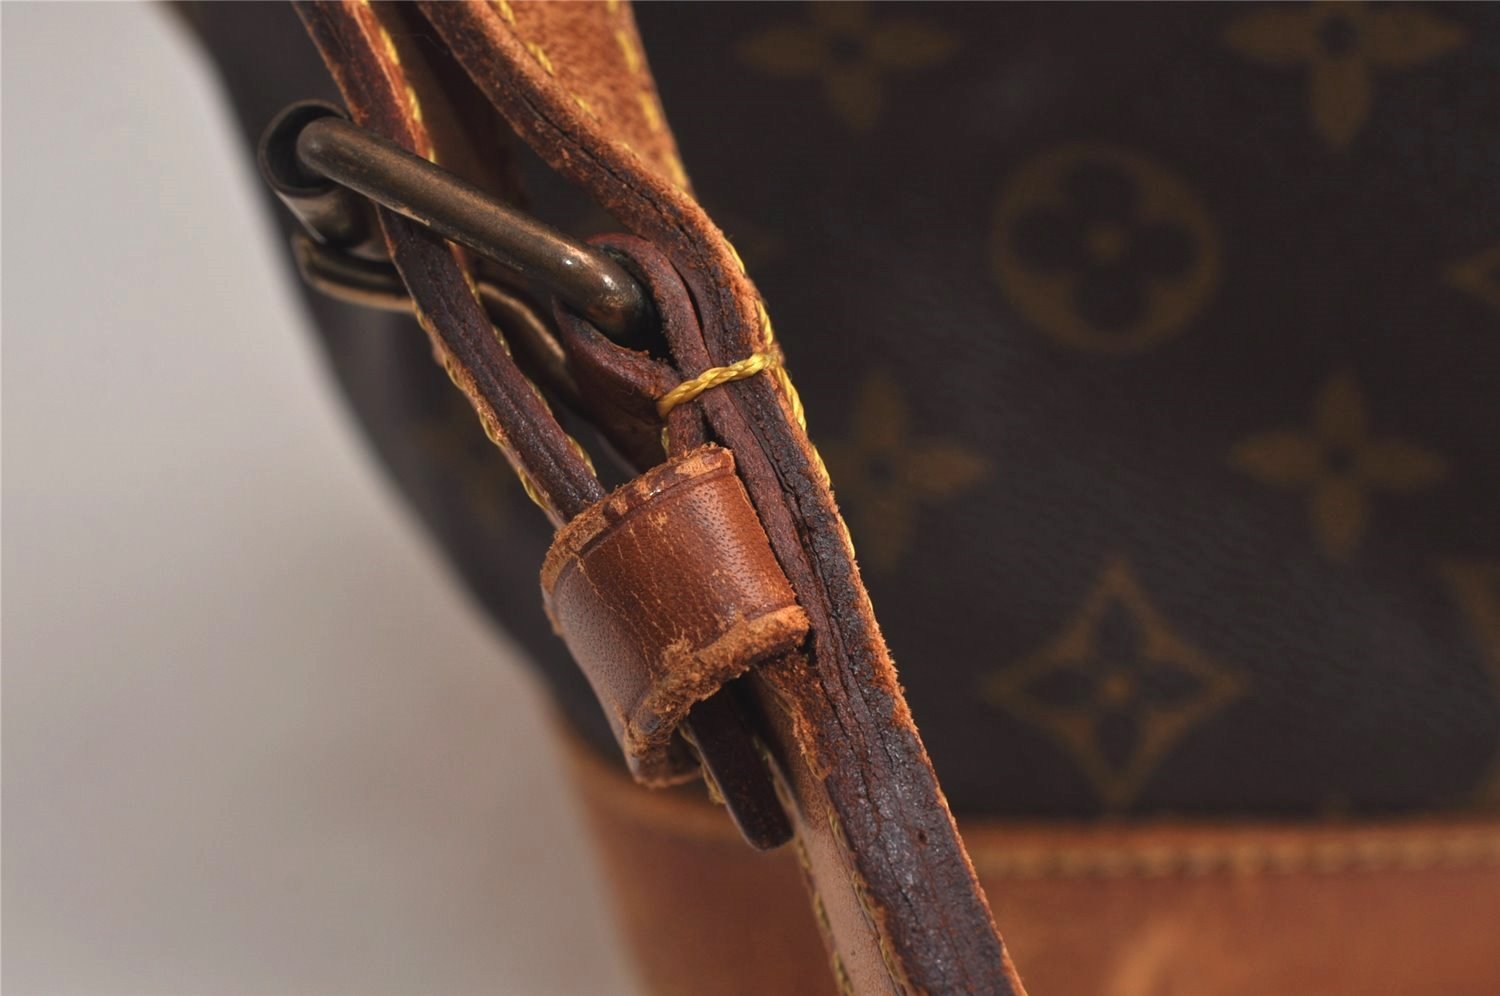 Authentic Louis Vuitton Monogram Noe Shoulder Drawstring Bag M42224 Junk 0509K